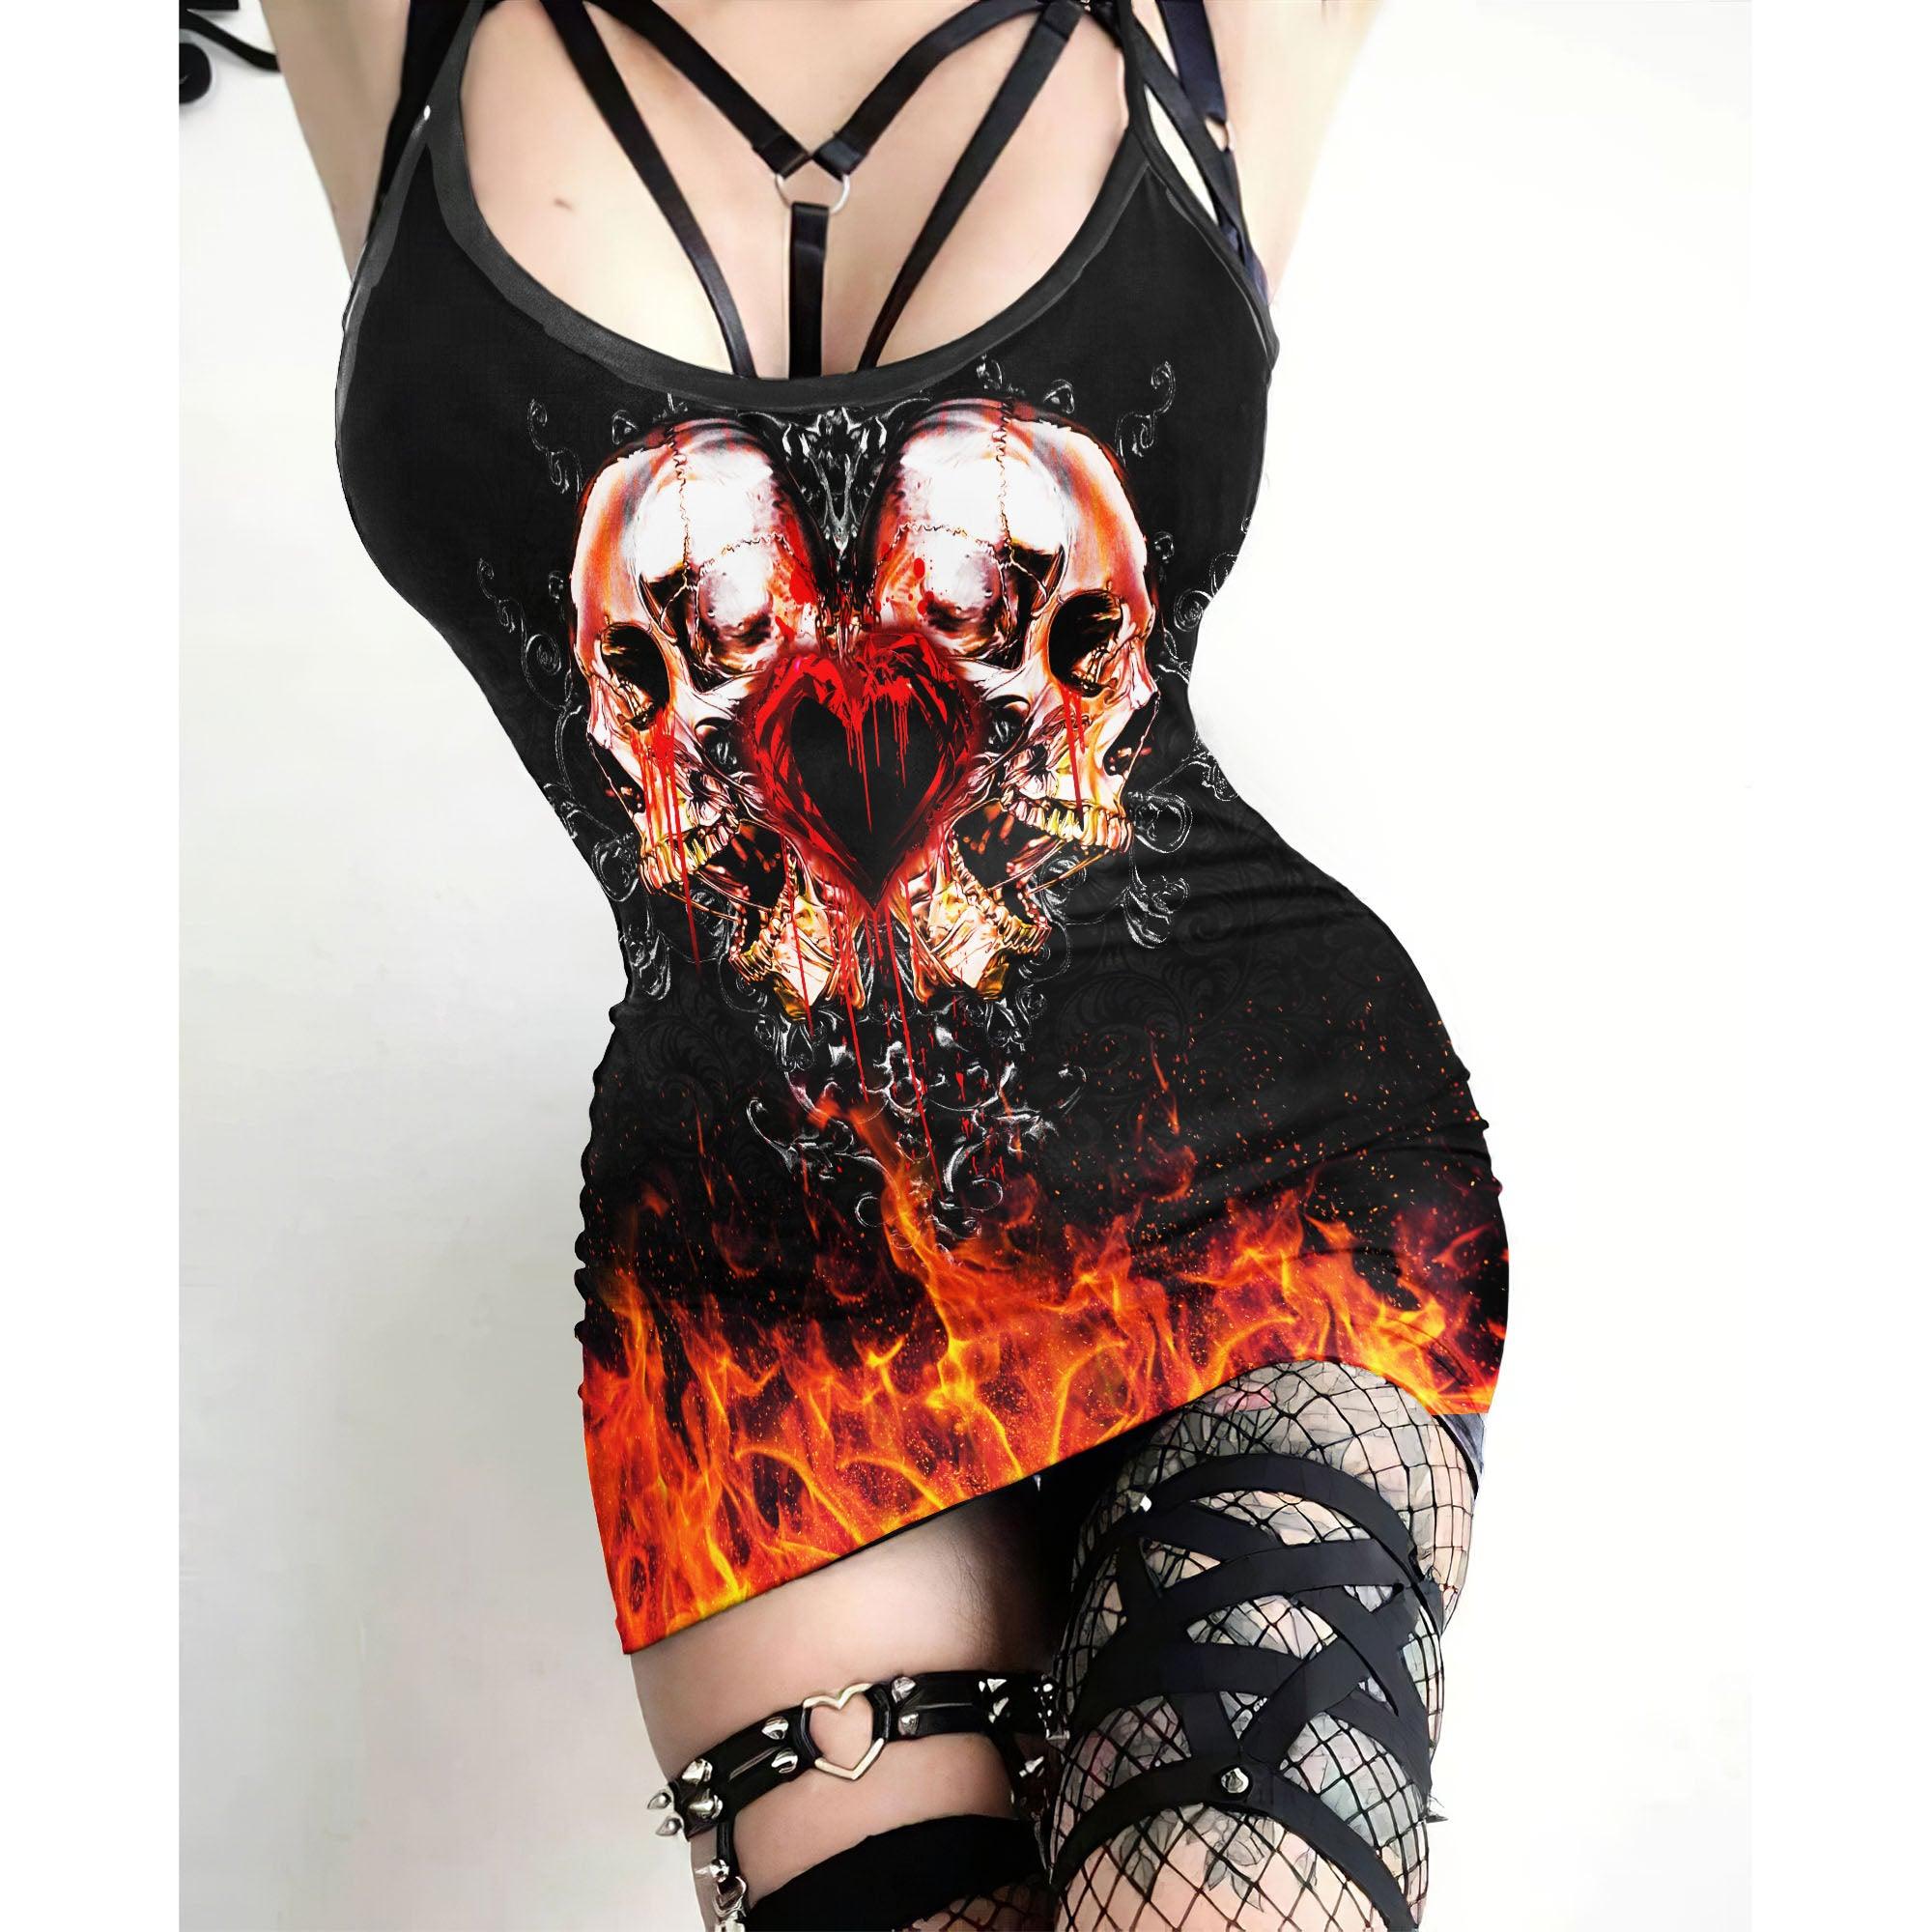 Fire Double Skull Heart Printed Body Dress, Naughty Sleeveless Minidress For Women-Wonder Skull